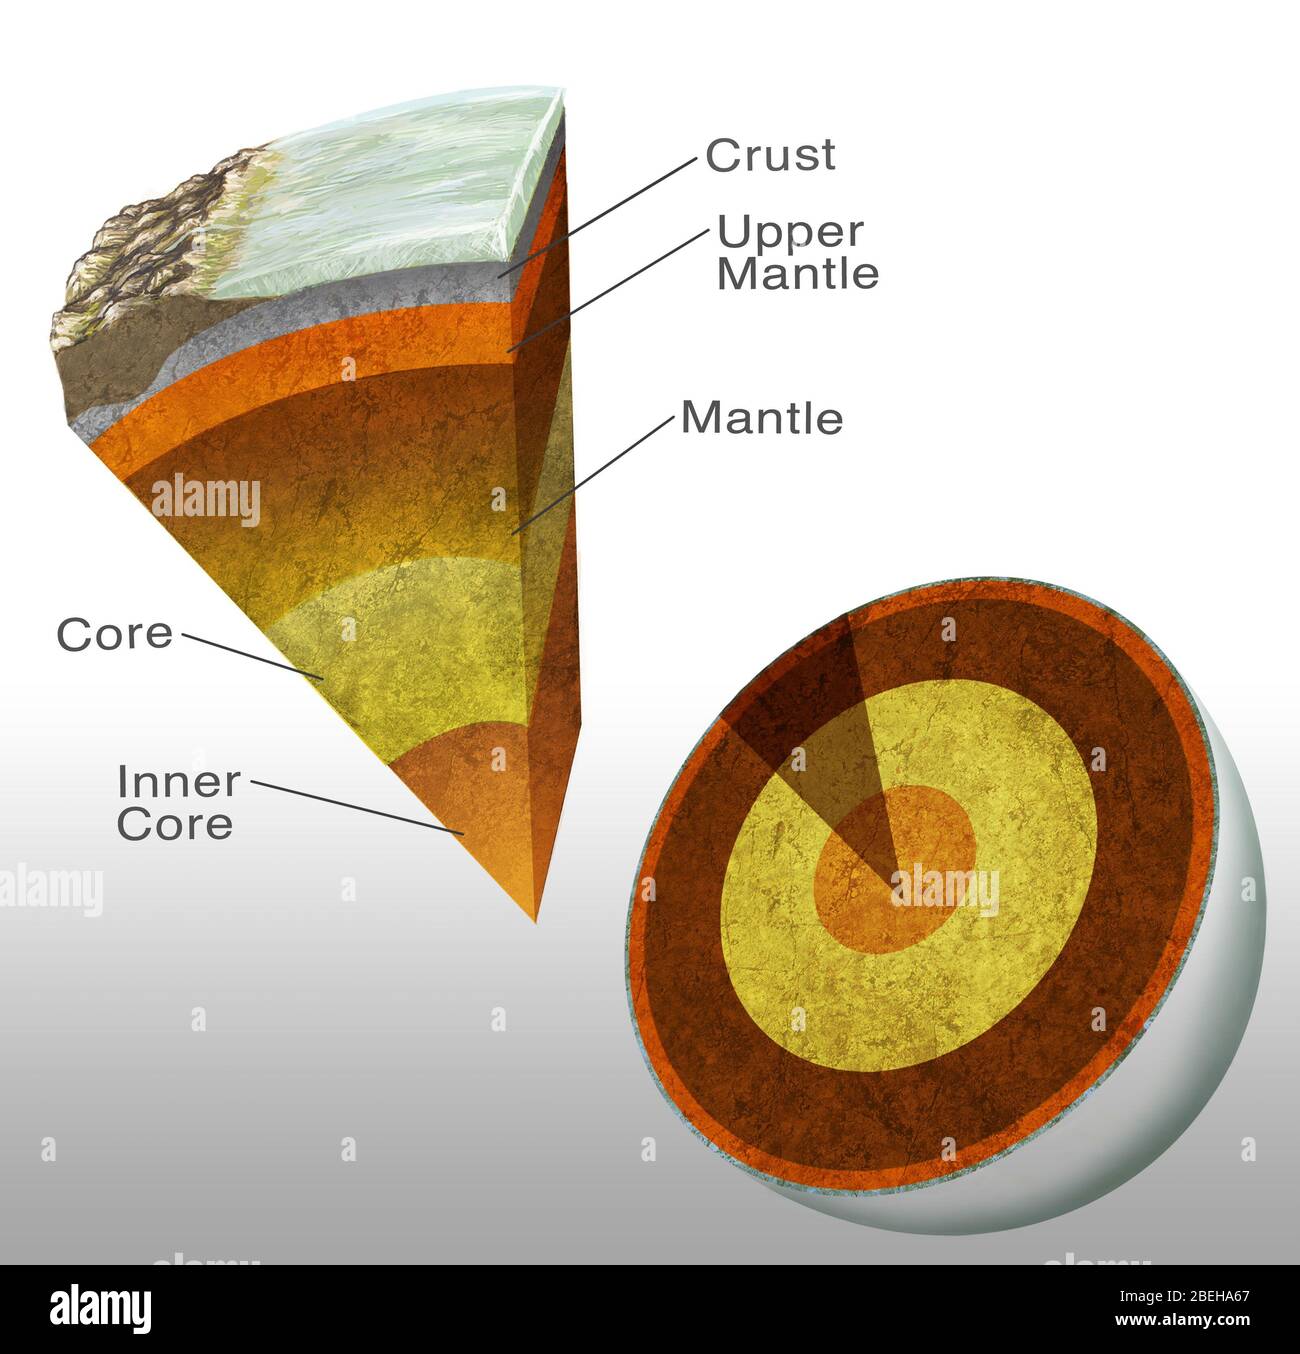 La structure de la terre. Œuvres d'art coupées de la structure interne de la Terre. Sous la croûte terrestre, une zone de roche presque fondue appelée manteau s'étend jusqu'à 2900 kilomètres (km). Sous le manteau se trouve le noyau en nickel-fer. Il est à environ 7000 km de l'autre côté. Le noyau extérieur (jaune) est fondu et le noyau intérieur (orange) est solide. La température au cœur peut être supérieure à 5000 degrés Celsius. Banque D'Images